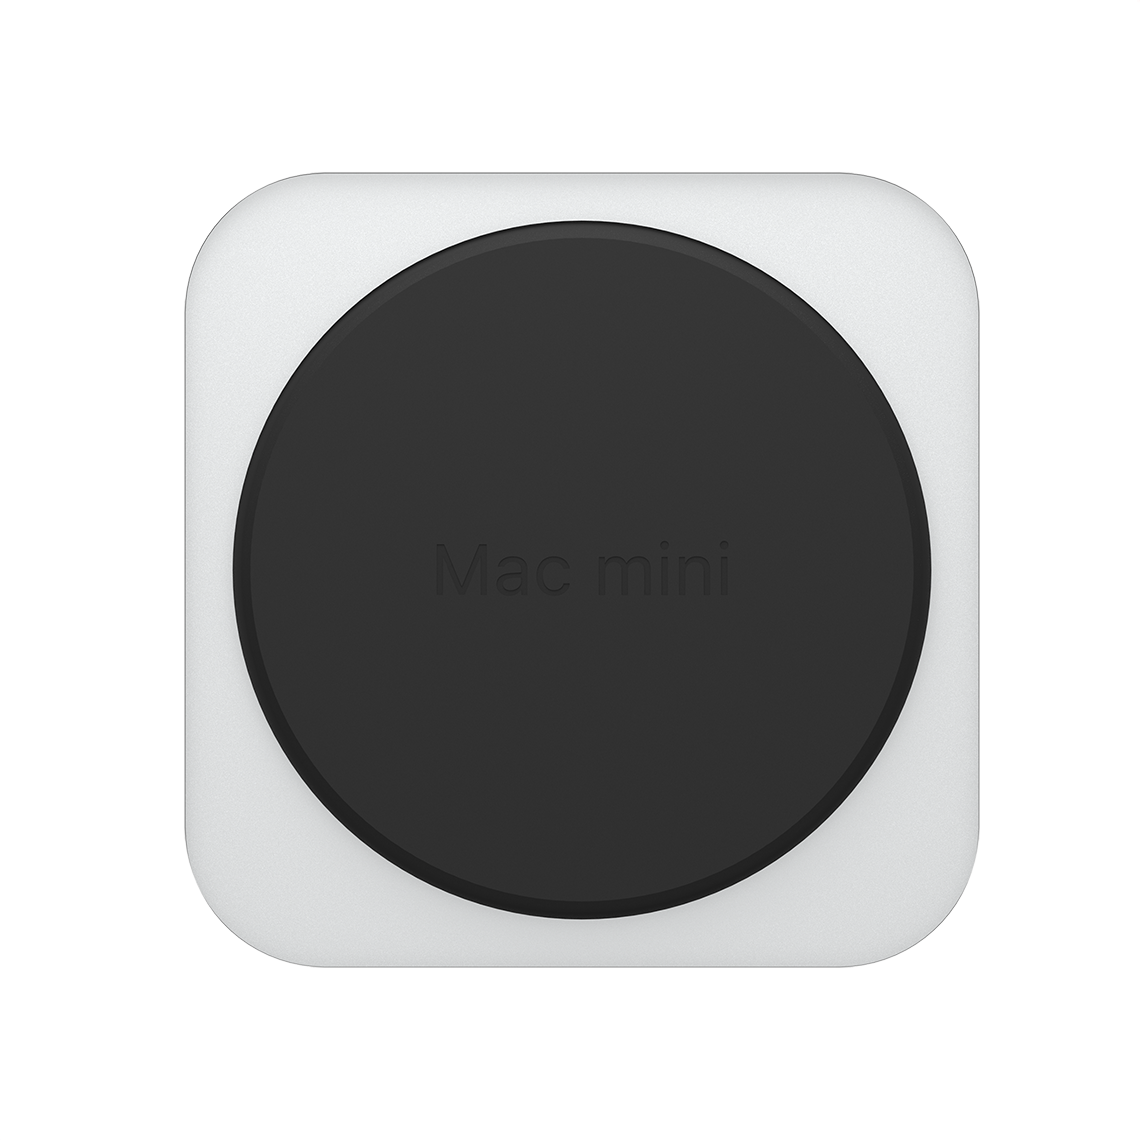 Apple M2 Pro Mac mini - 32GB RAM, 1TB Flash, 16-Core GPU, Grade A